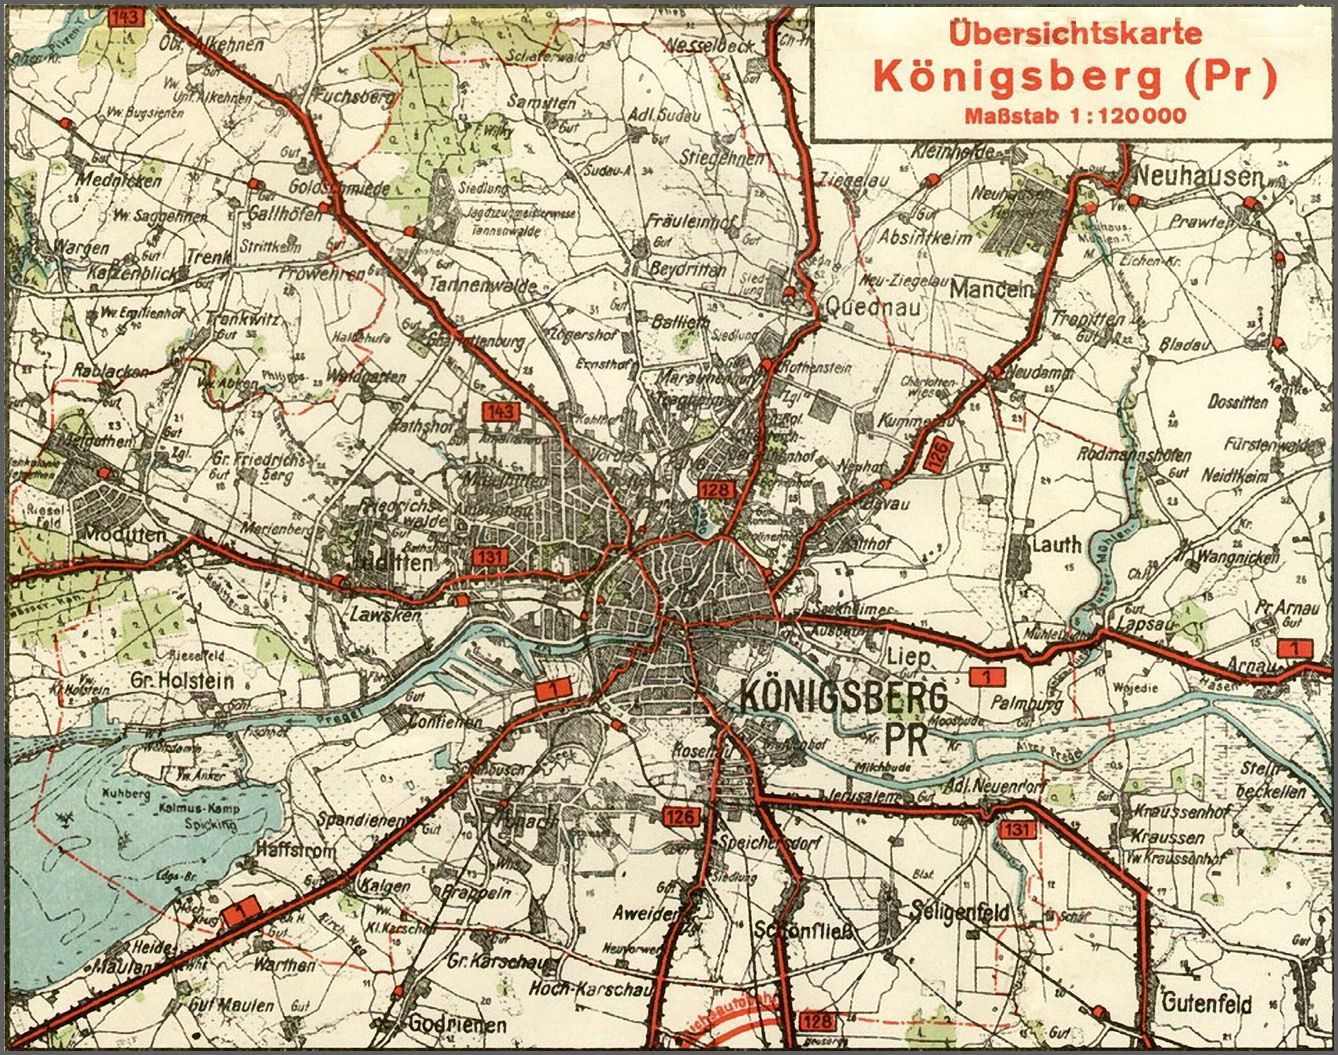 Übersichtskarte Königsberg, 1940